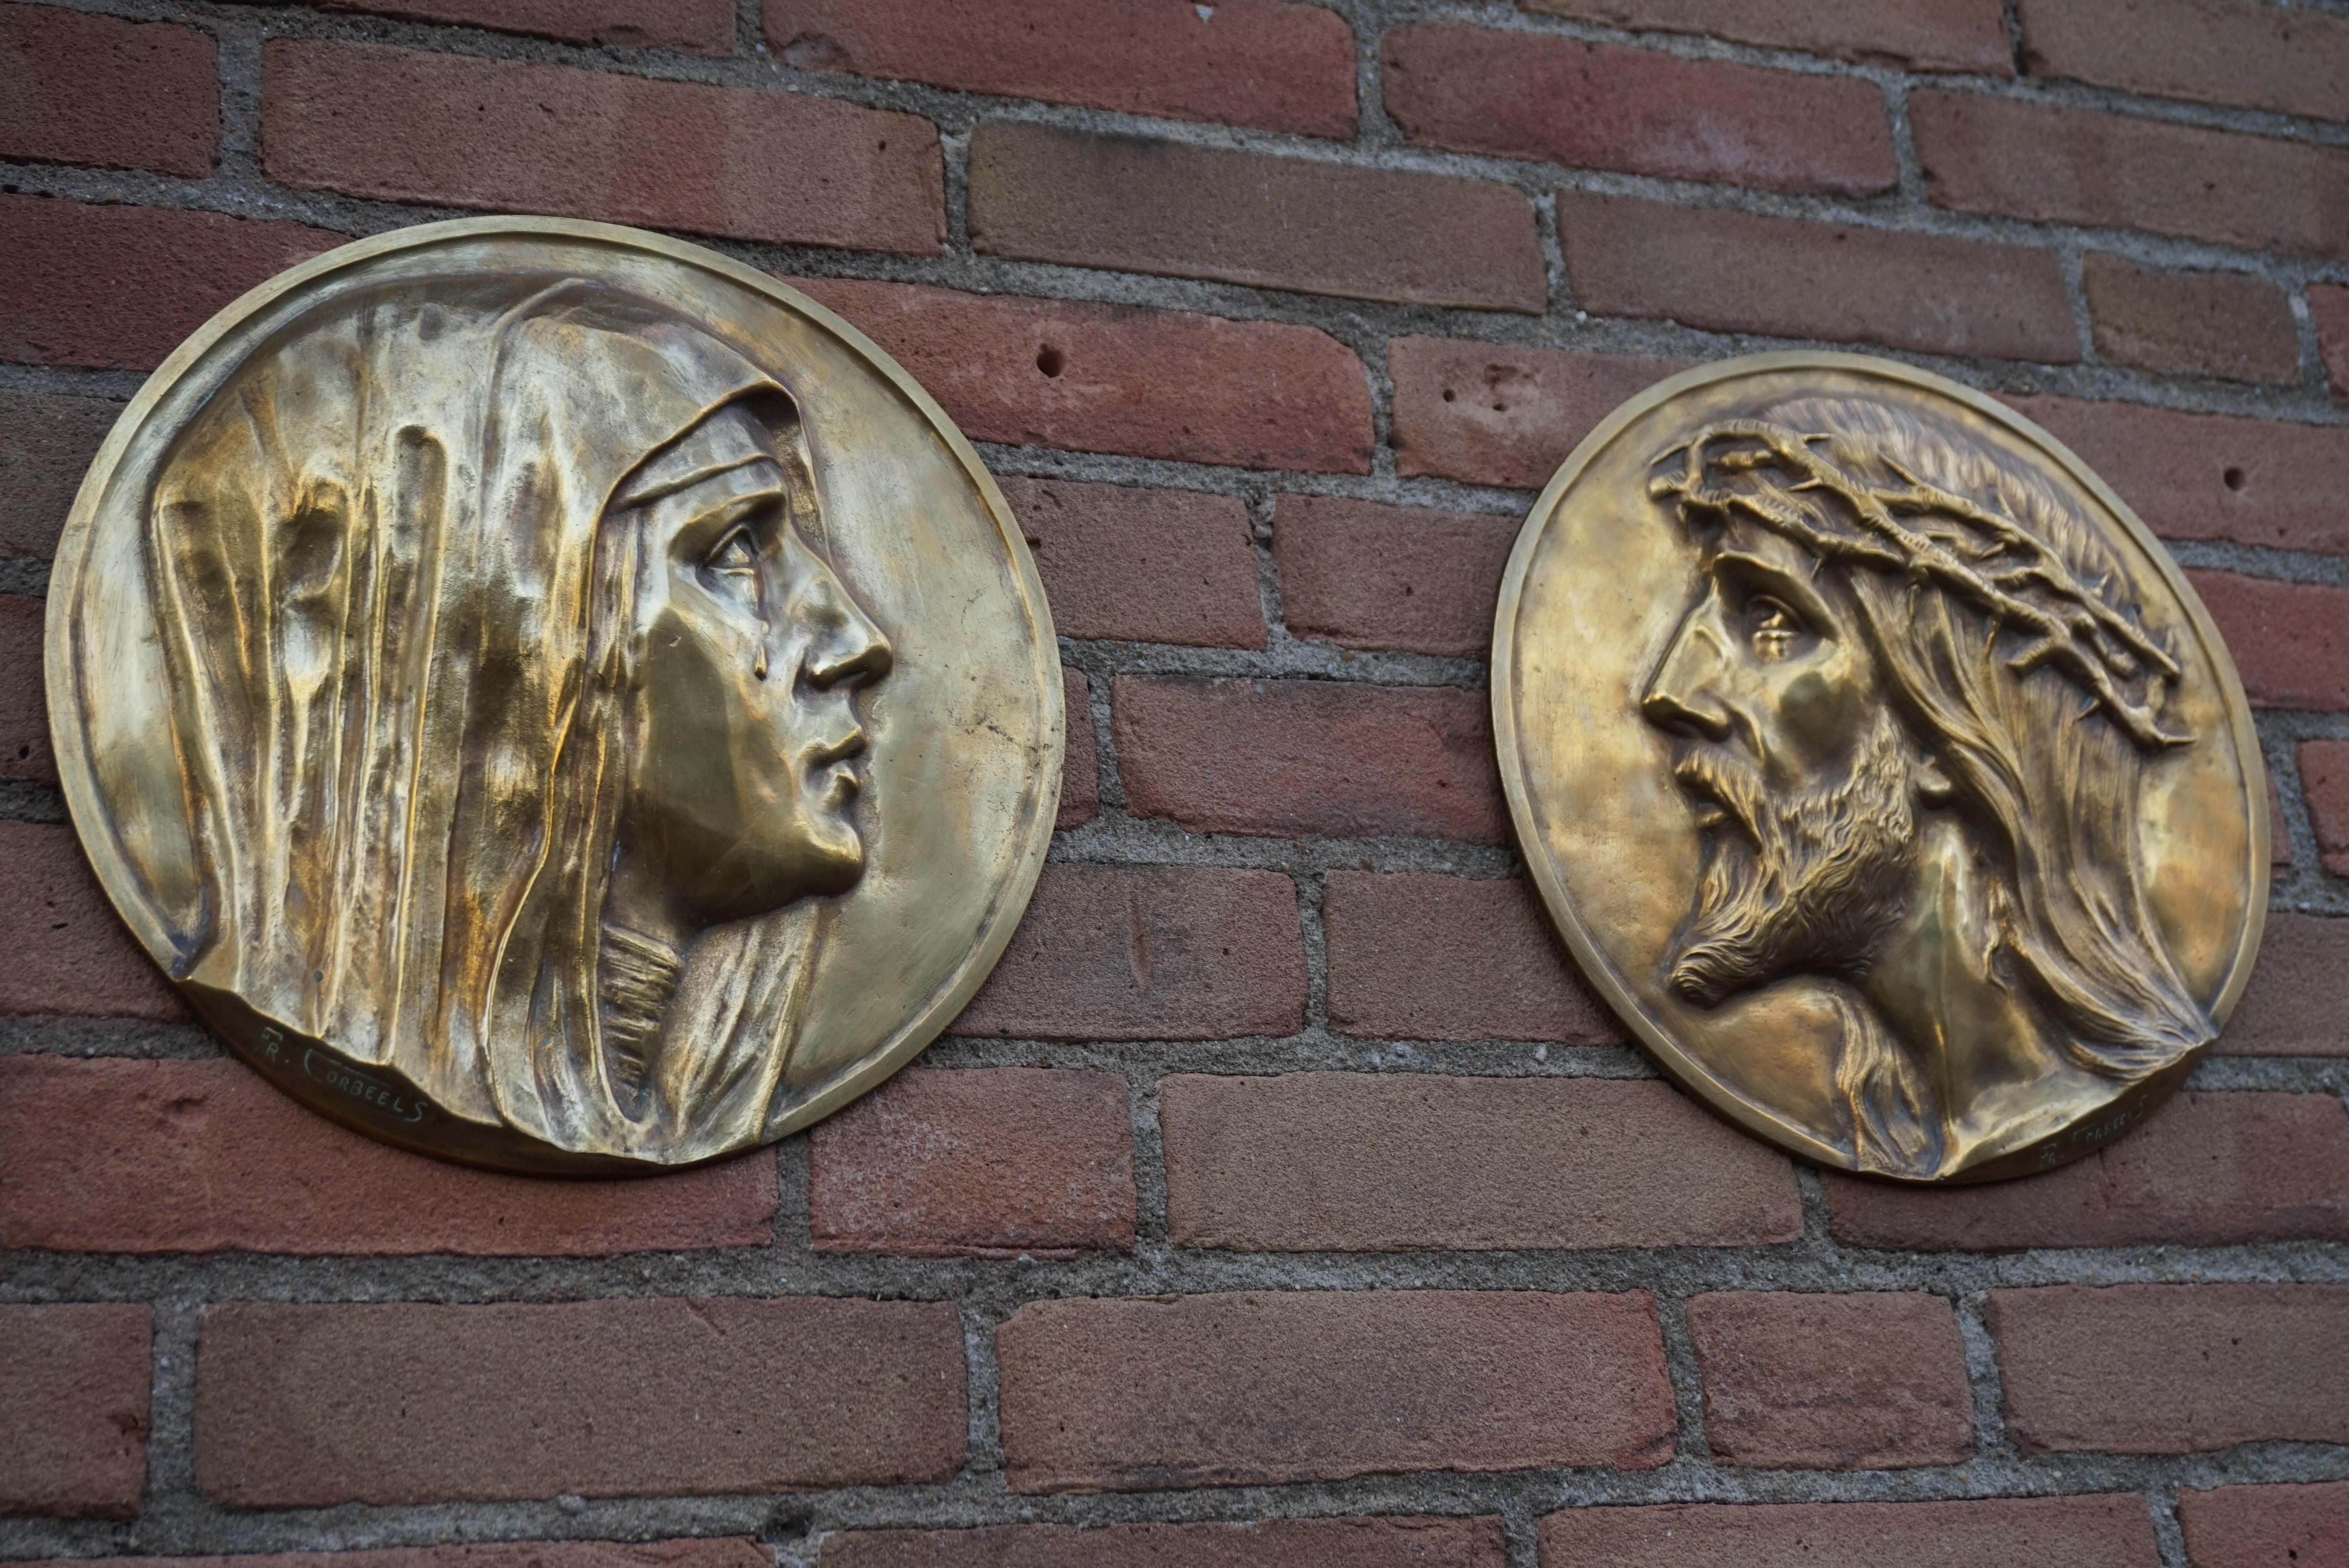 Seltenes Paar Bronzeplaketten aus den frühen 1900er Jahren von P. Corbeels (1888-1956).

Dieses große Paar Wandtafeln aus Bronze ist ein weiterer großartiger Fund aus jüngster Zeit. Es ist eine echte Herausforderung, Kunstwerke dieses begabten